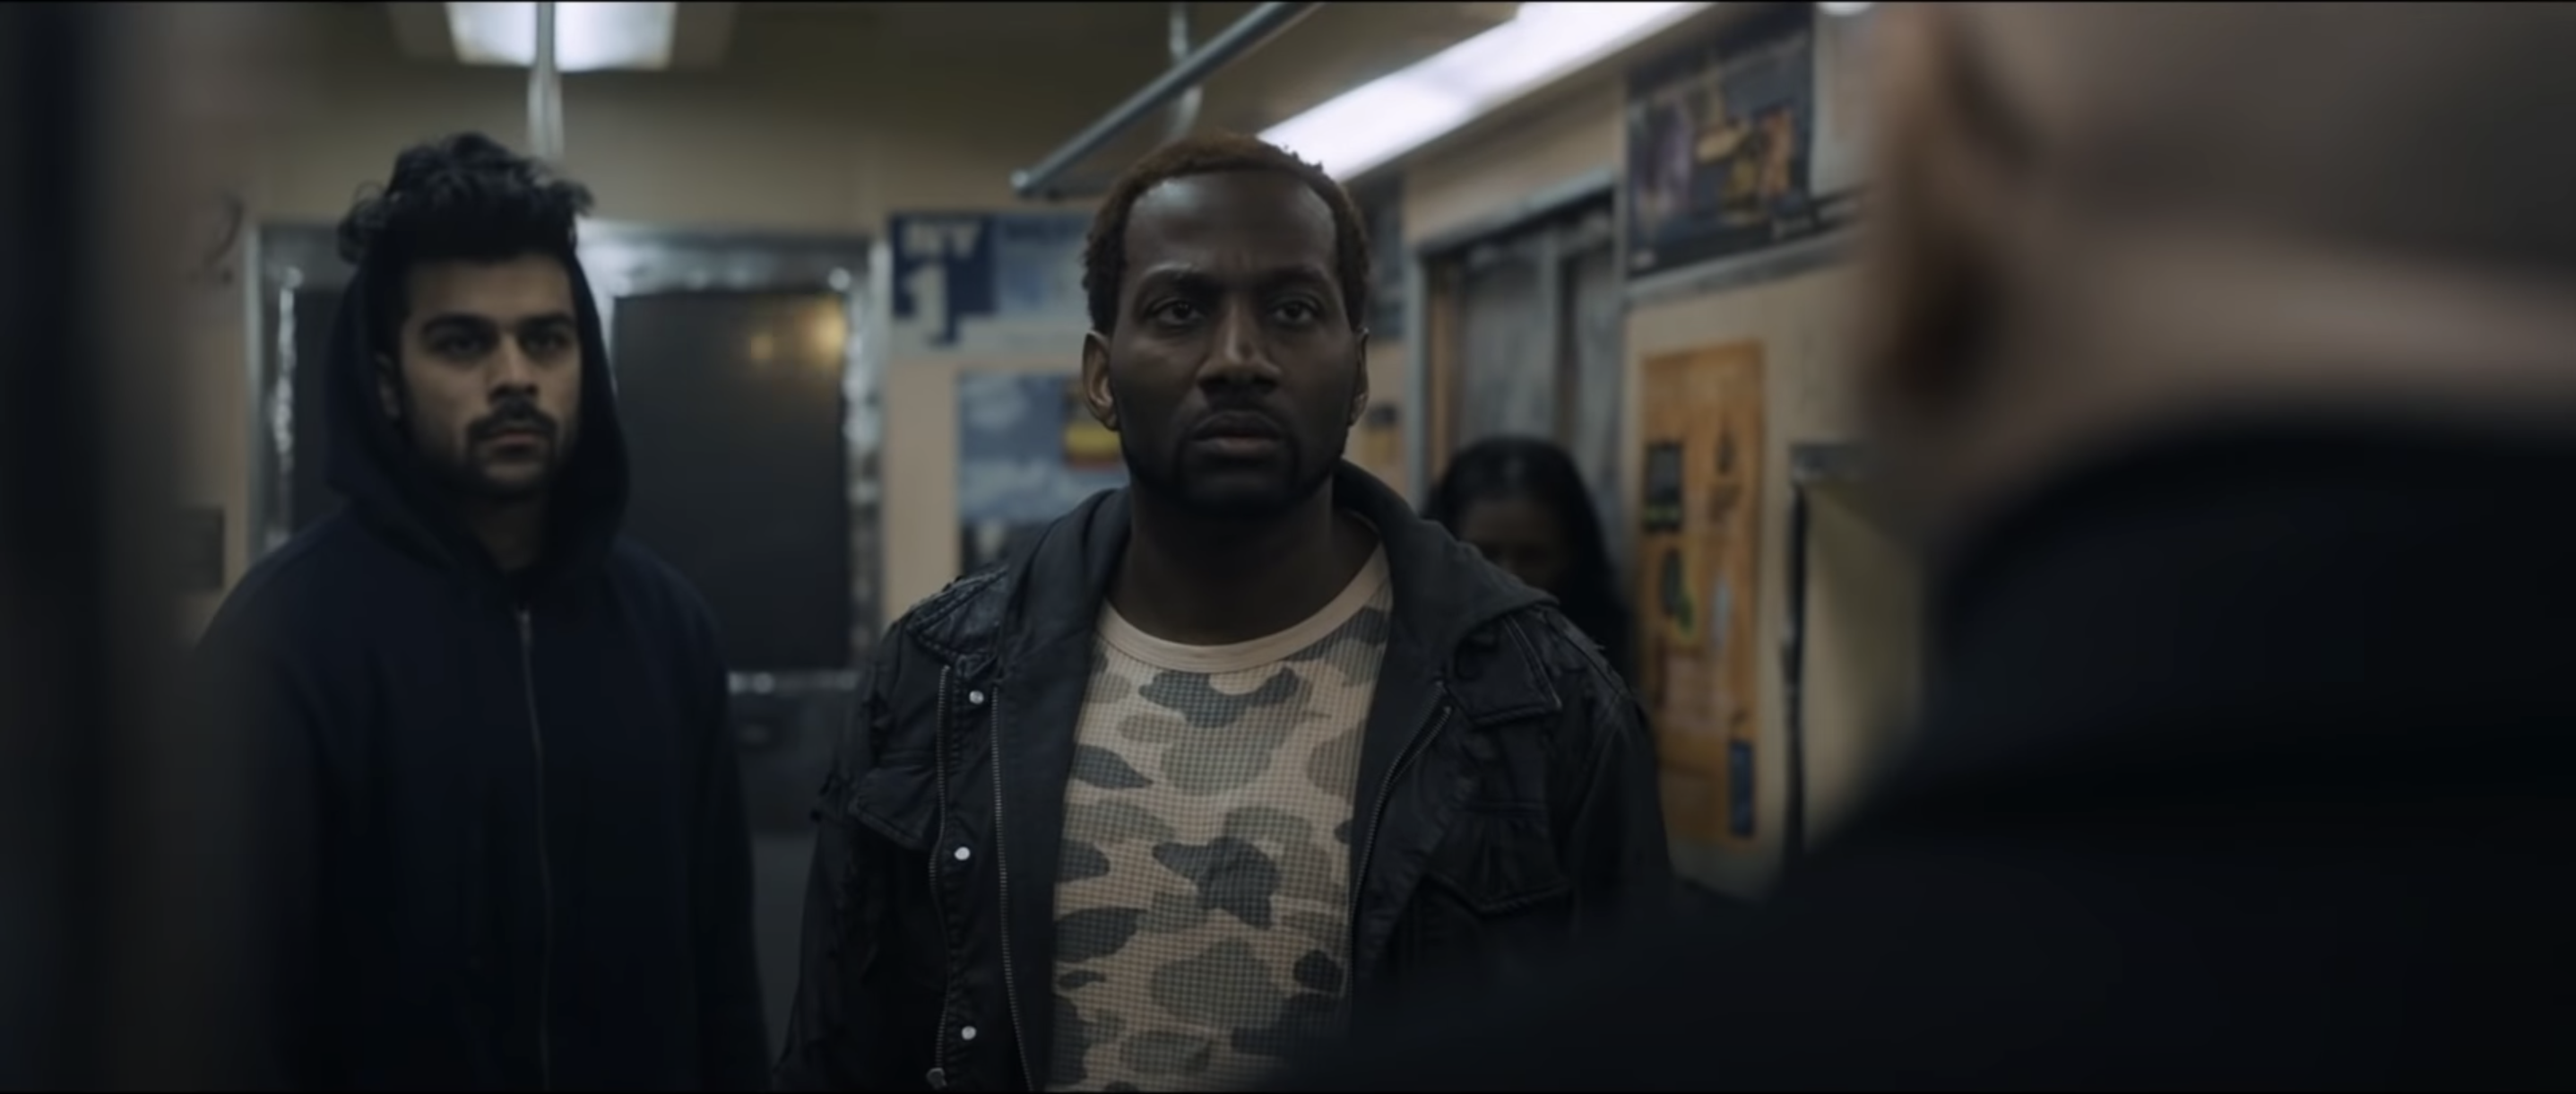 Tribes: หนังสั้น 10 นาทีเล่าเรื่องสามโจรก่อการปล้น ‘ความเป็นมนุษย์’ ในรถไฟใต้ดินนิวยอร์ก